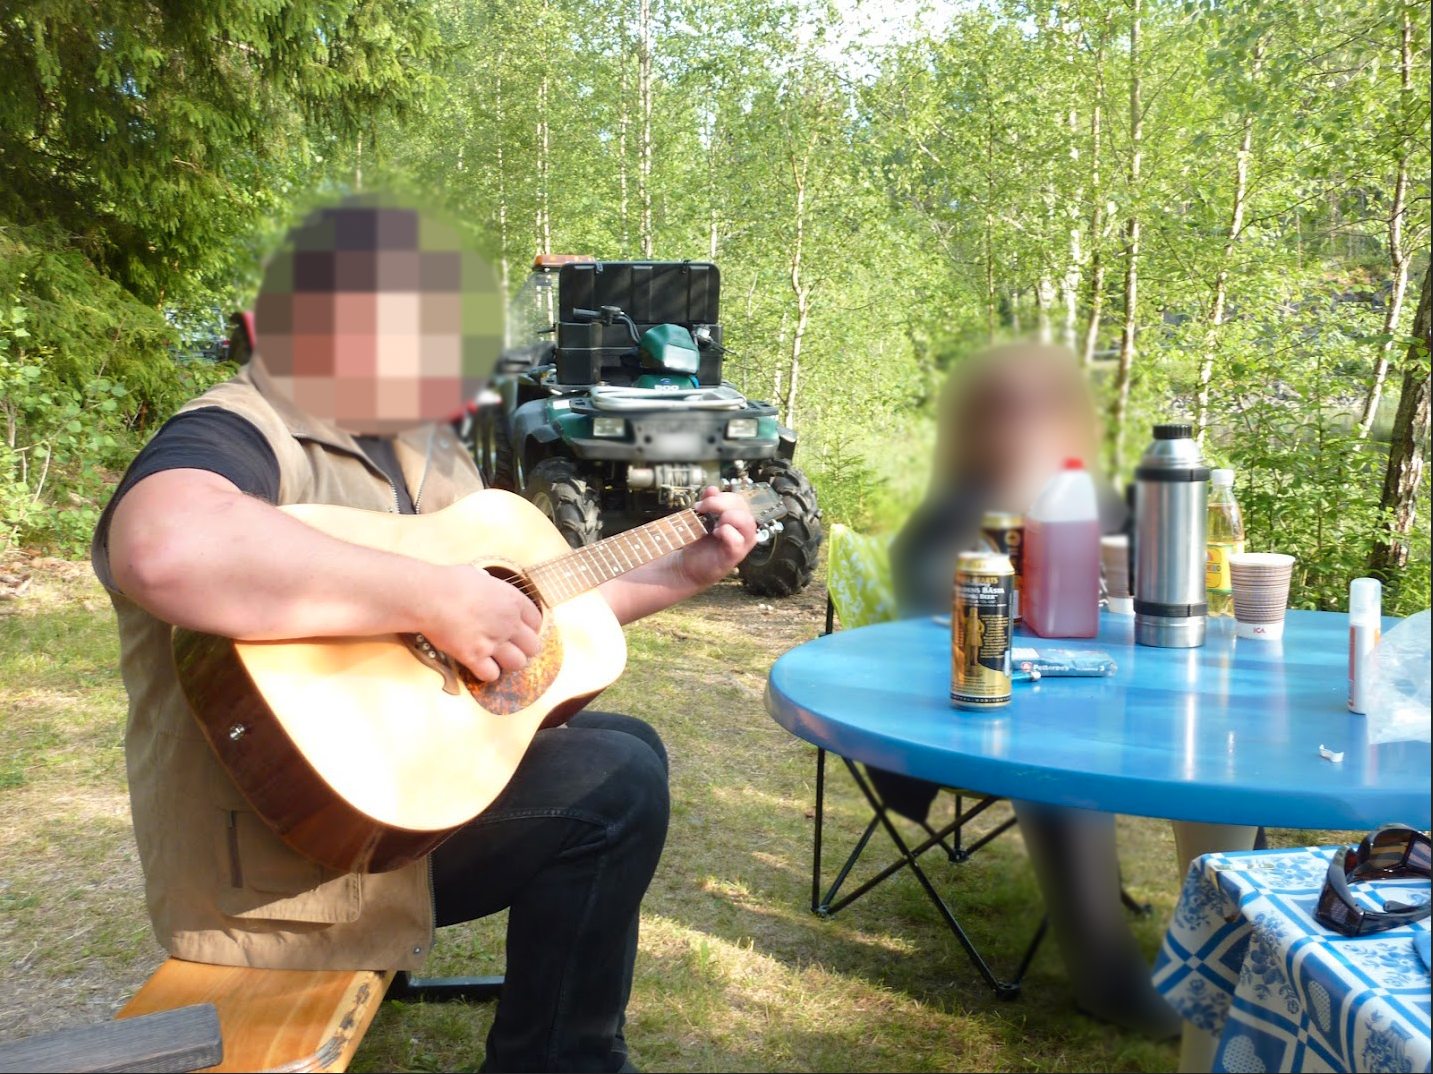 Den nu åtalade mannen tillsammans med kvinnan som hittades i en frys. Bilden är tagen i samband med en sommarfest för flera år sedan där han spelade gitarr och sjöng.